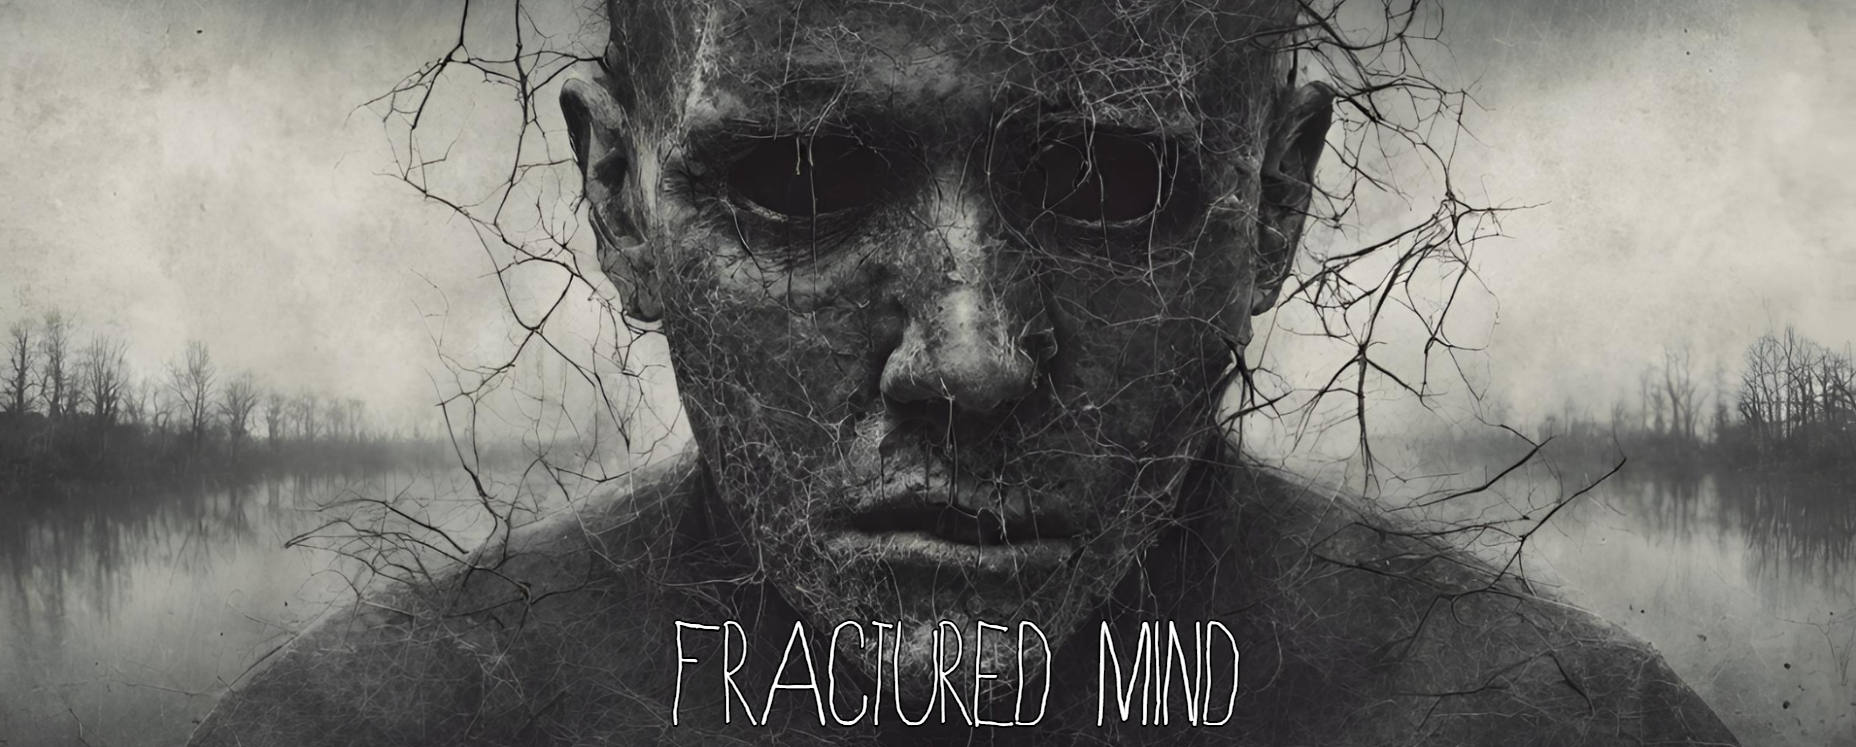 《Fractured Mind》PC试玩发布 拟真场景恐怖探索